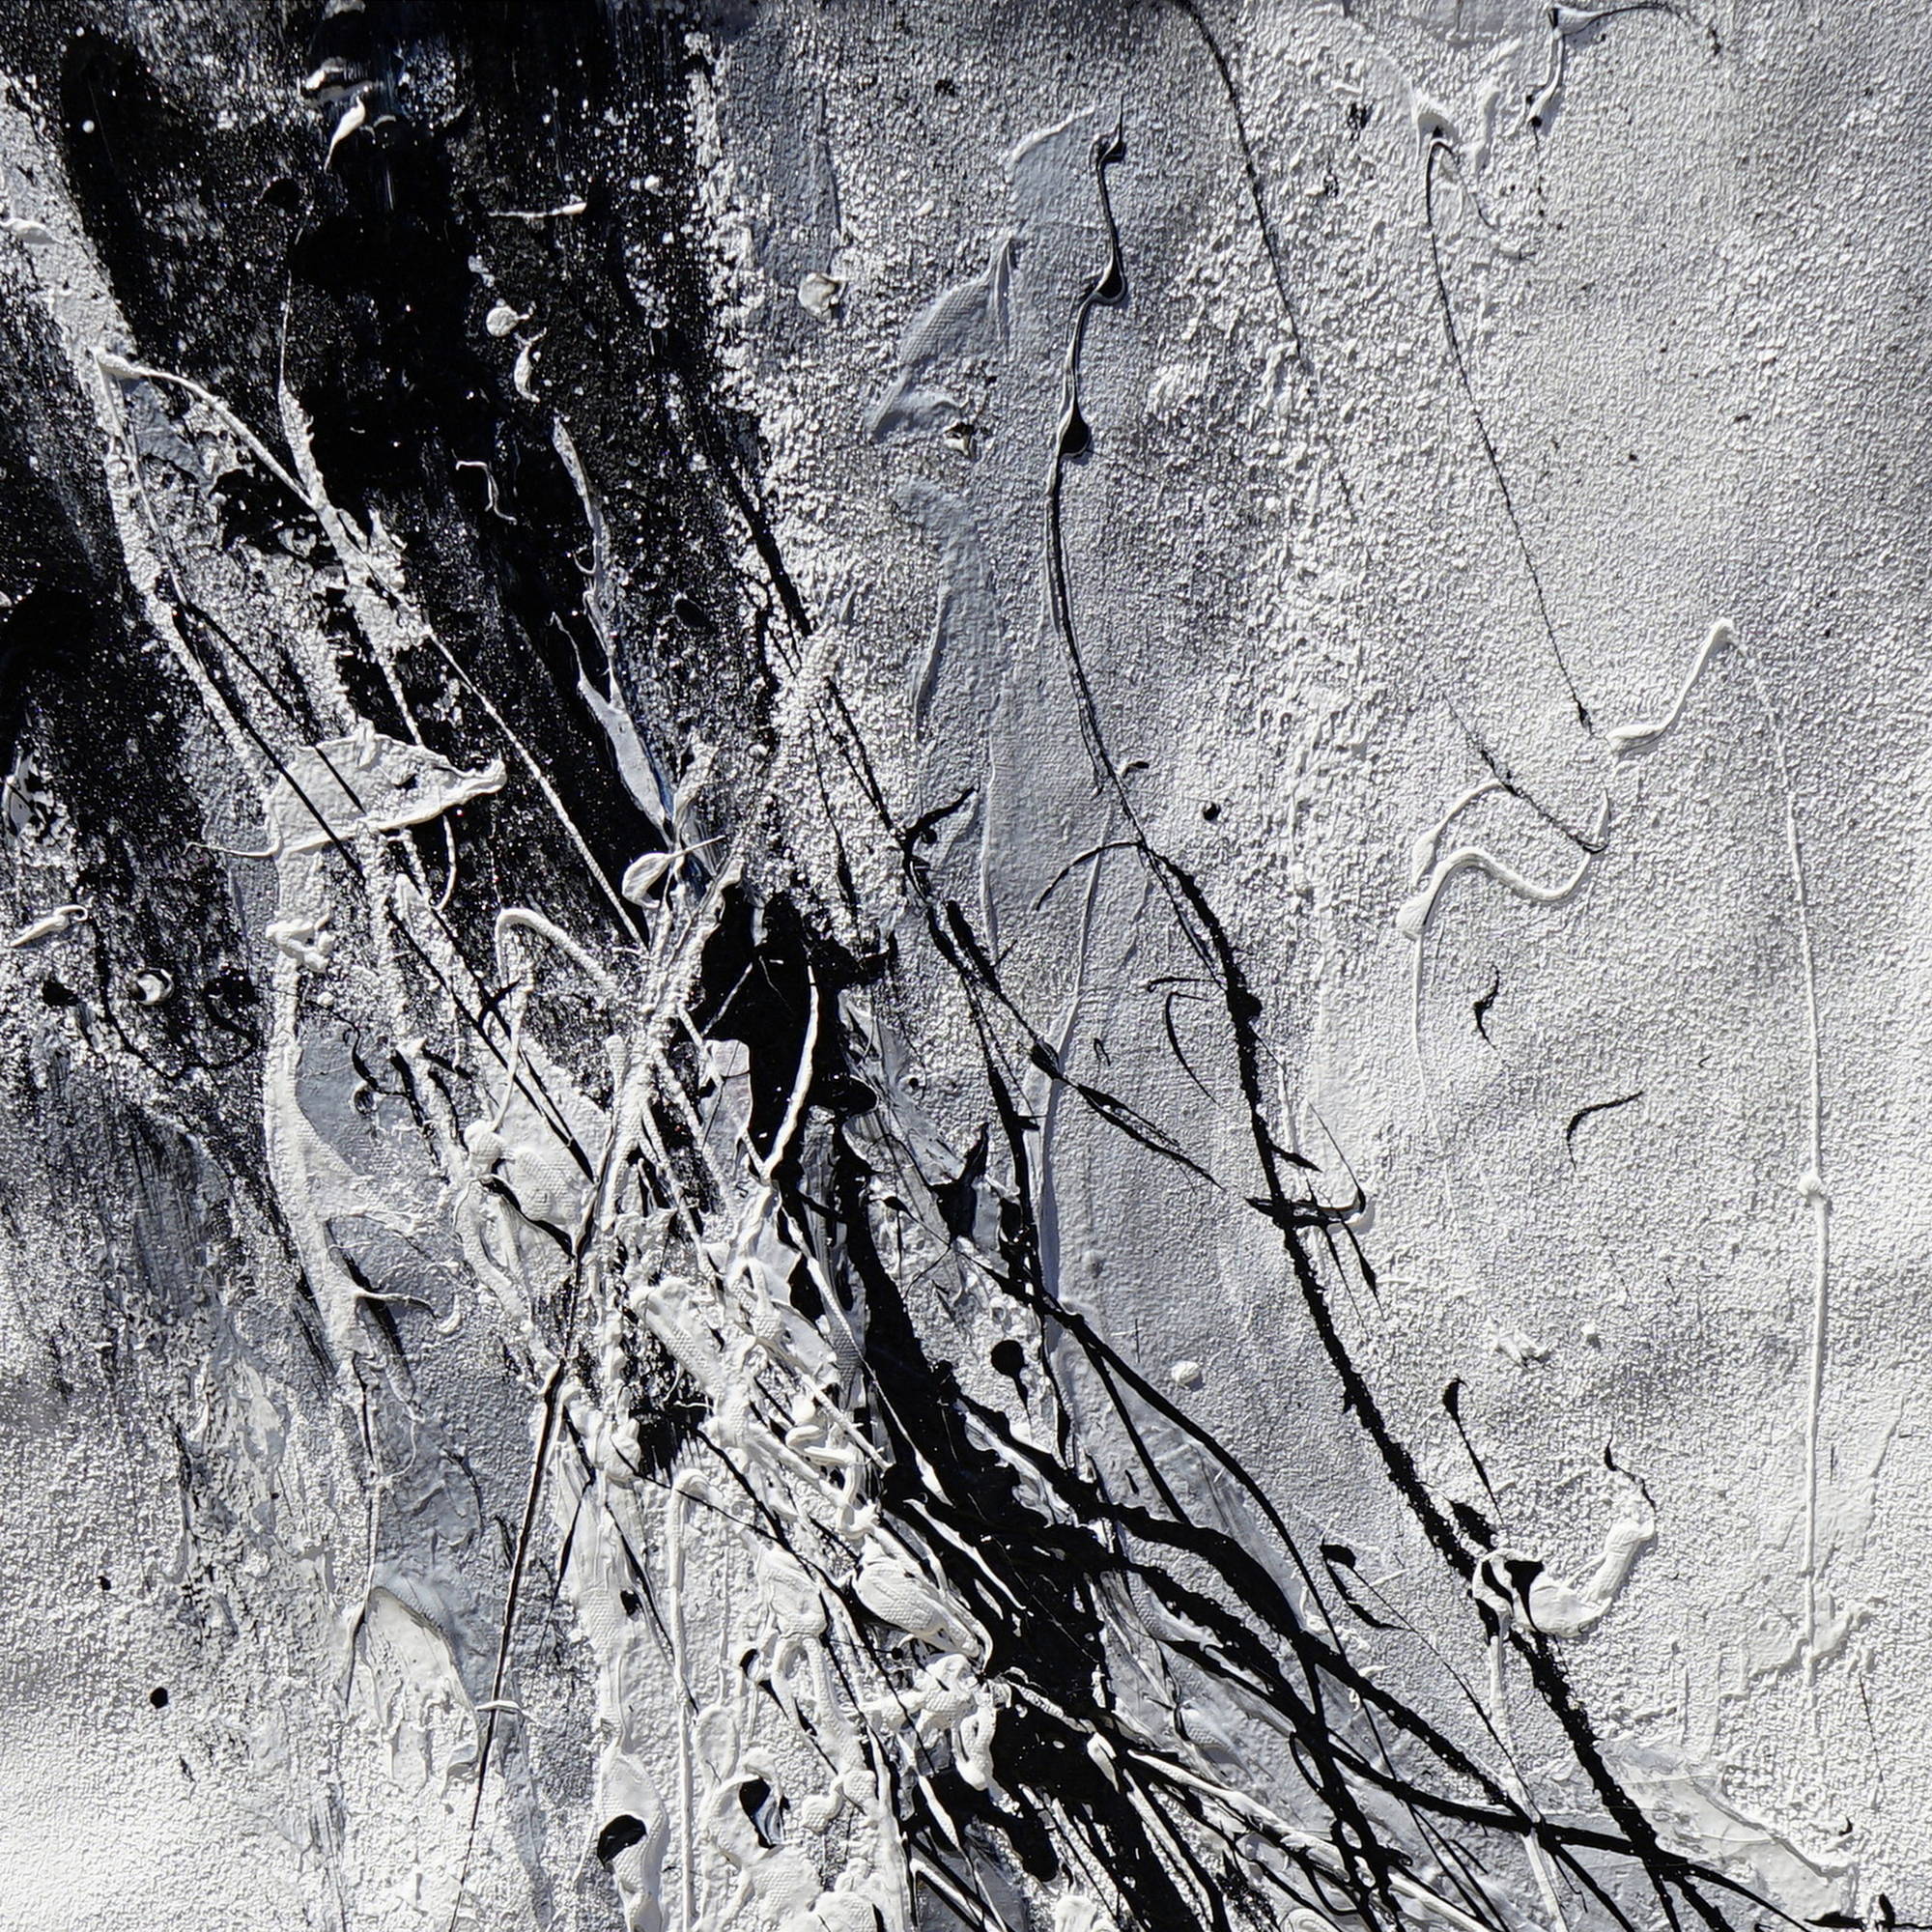 Composition abstraite peinte à la main en noir et blanc 80x120cm